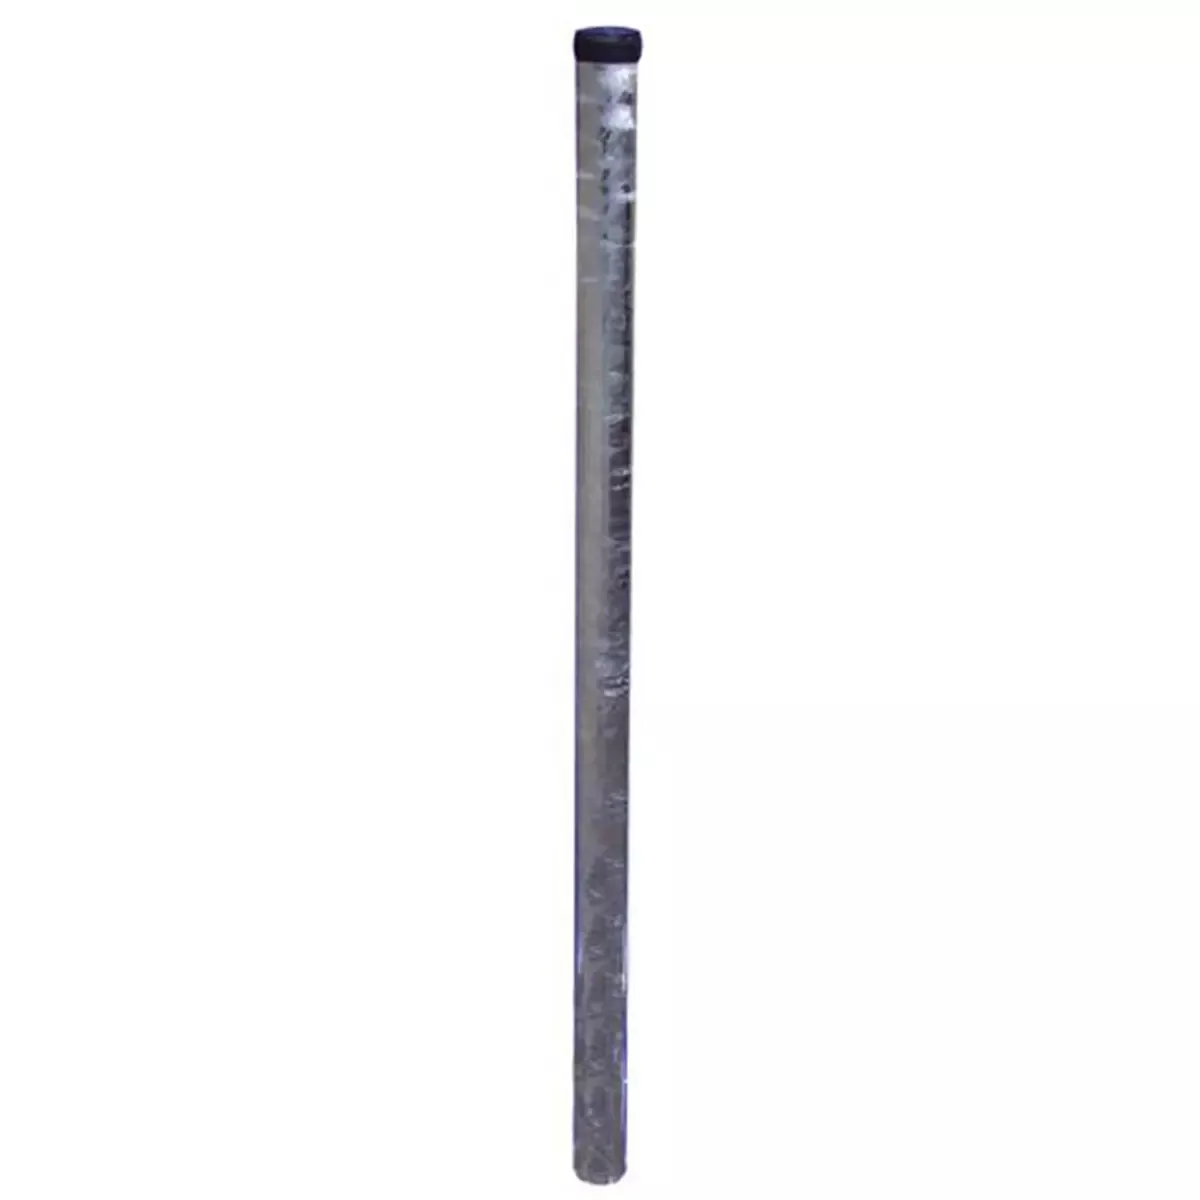 Rohrpfosten aus Stahl, ø 76 mm, Wandstärke 2,9 mm, Länge 3.250 mm, nach IVZ S432